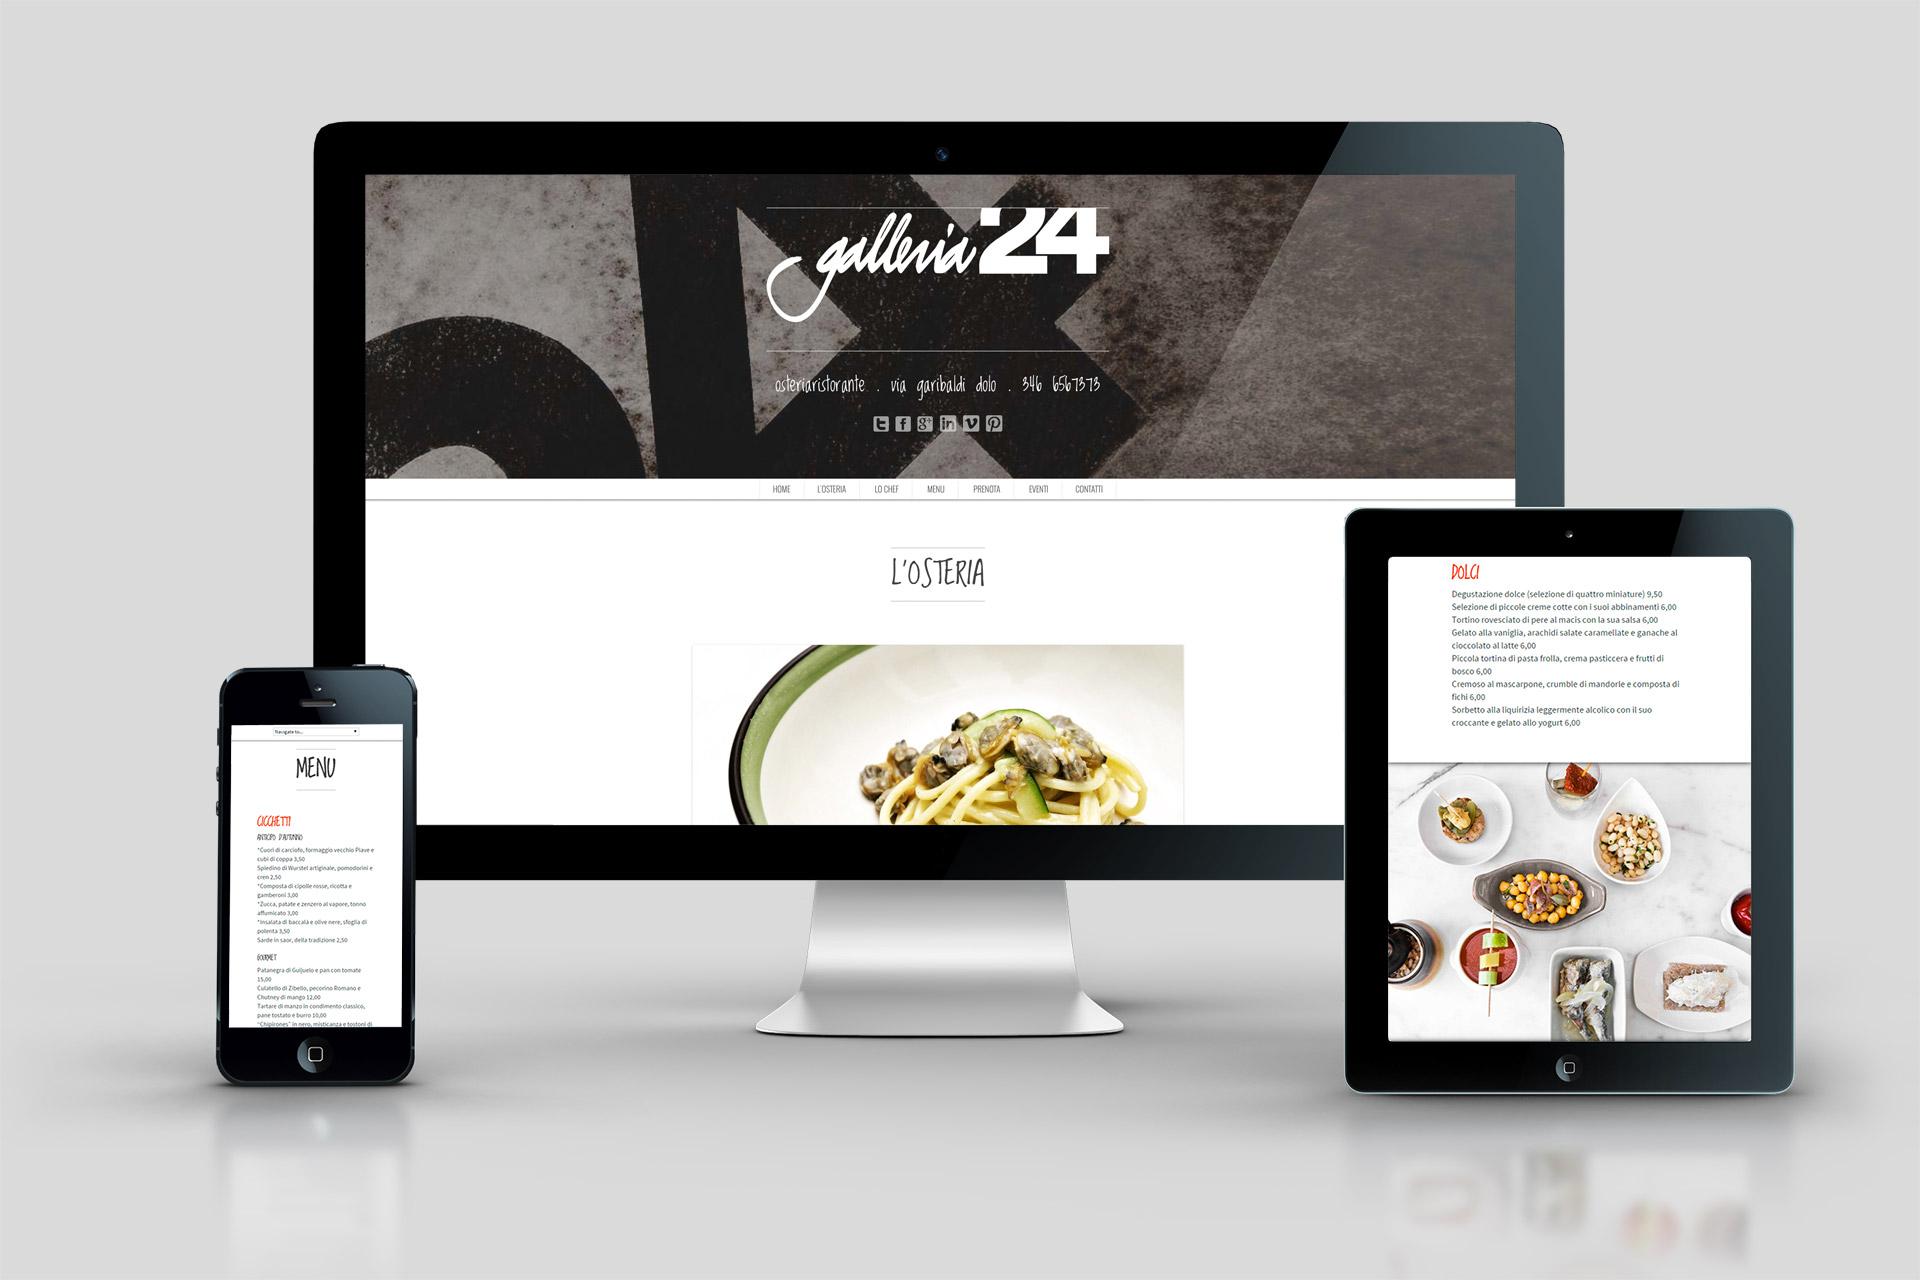 obliquo-design-galleria24-sito-web-webdesign-padova-venezia-treviso-ristorante-bar-locale-pub-veneto